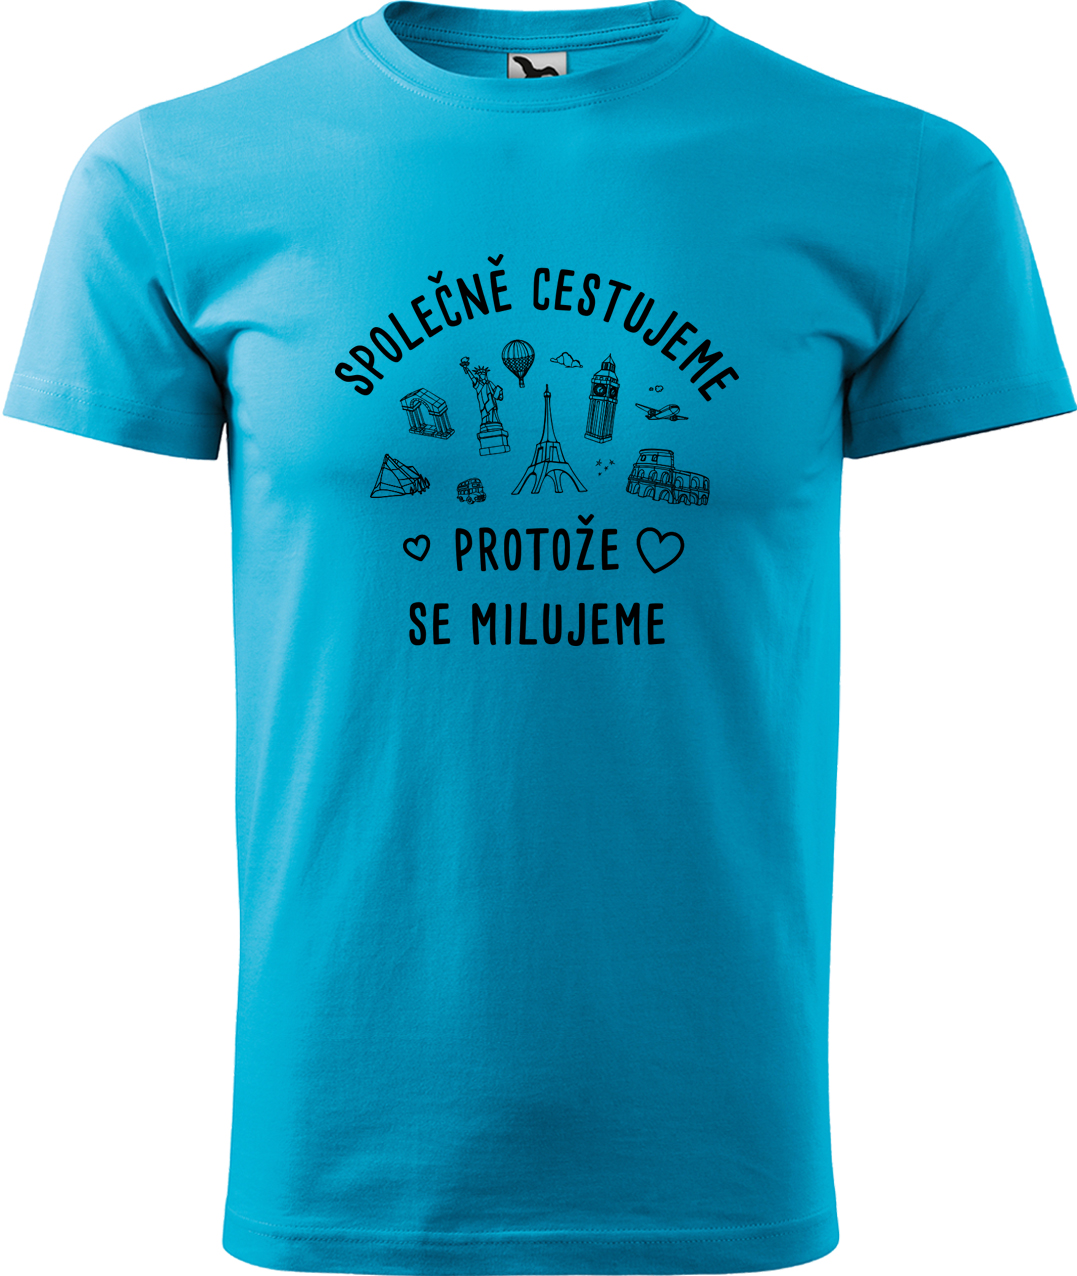 Pánské cestovatelské tričko - Společně cestujeme protože se milujeme Velikost: S, Barva: Tyrkysová (44), Střih: pánský